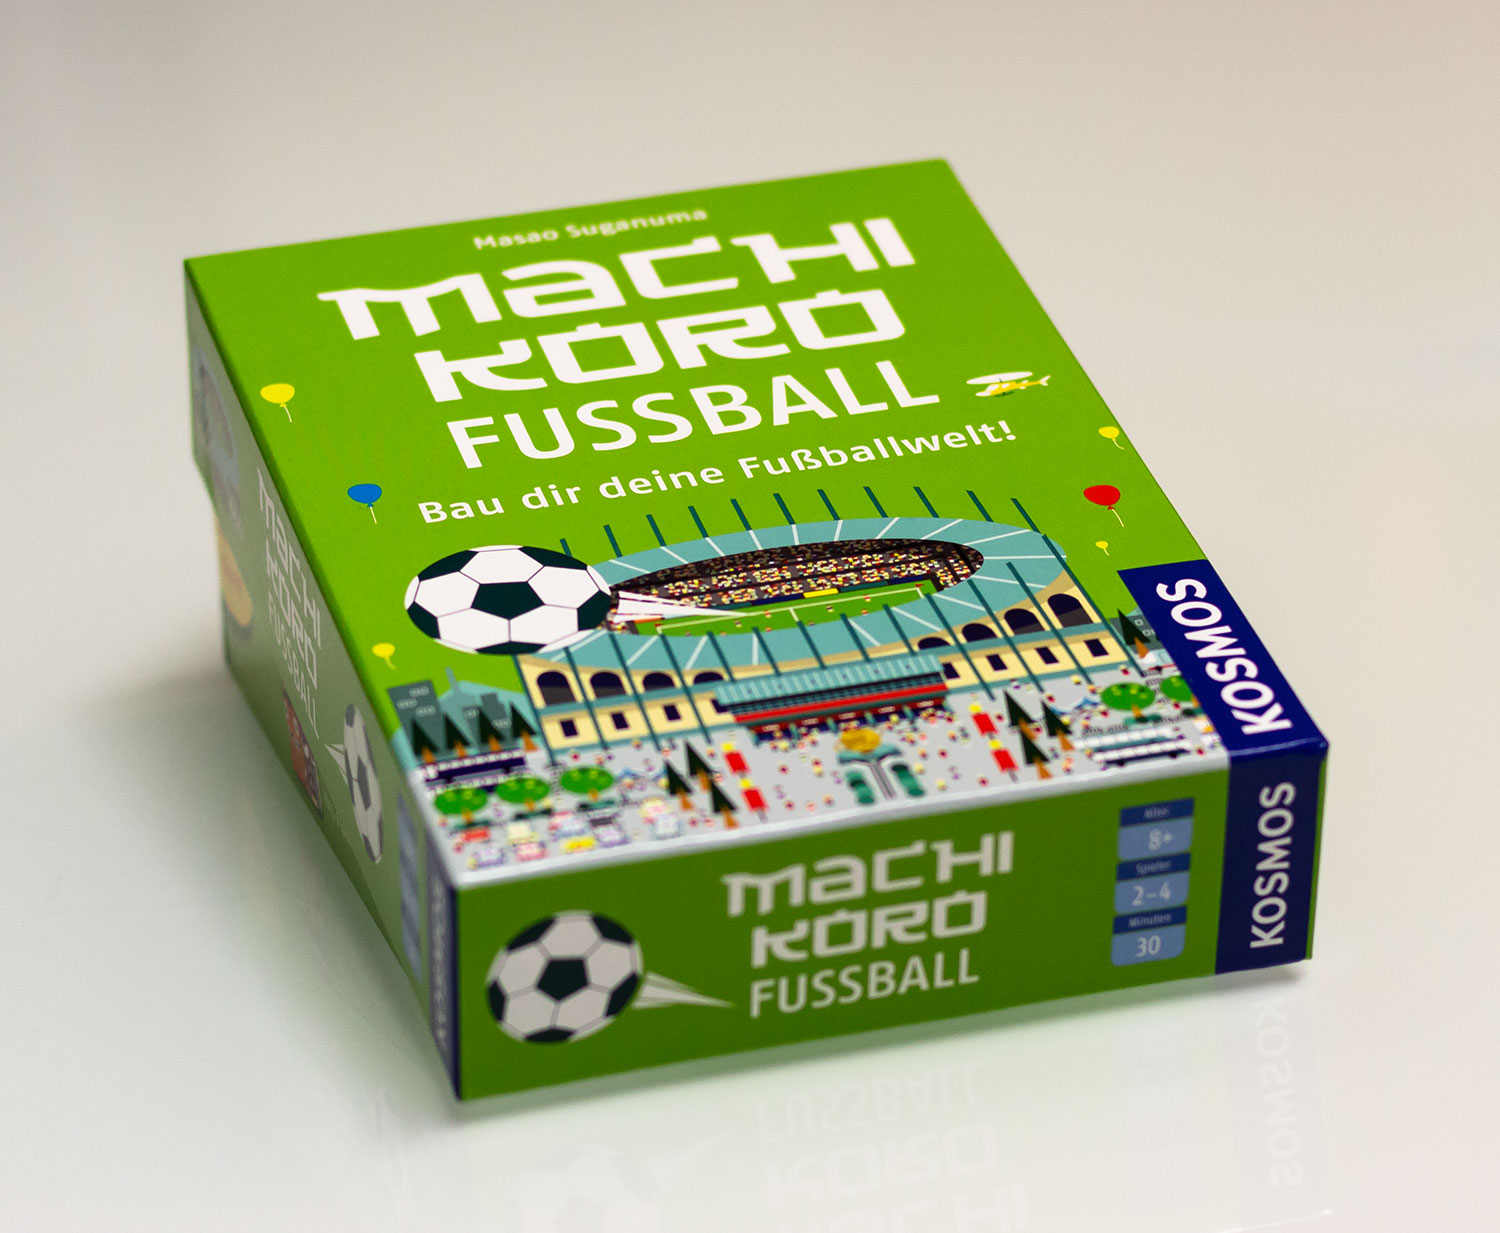 Machi Koro Fußball erscheint im April 2018Machi Koro Fußball ist nun im Handel zu kaufen - erster Eindruck